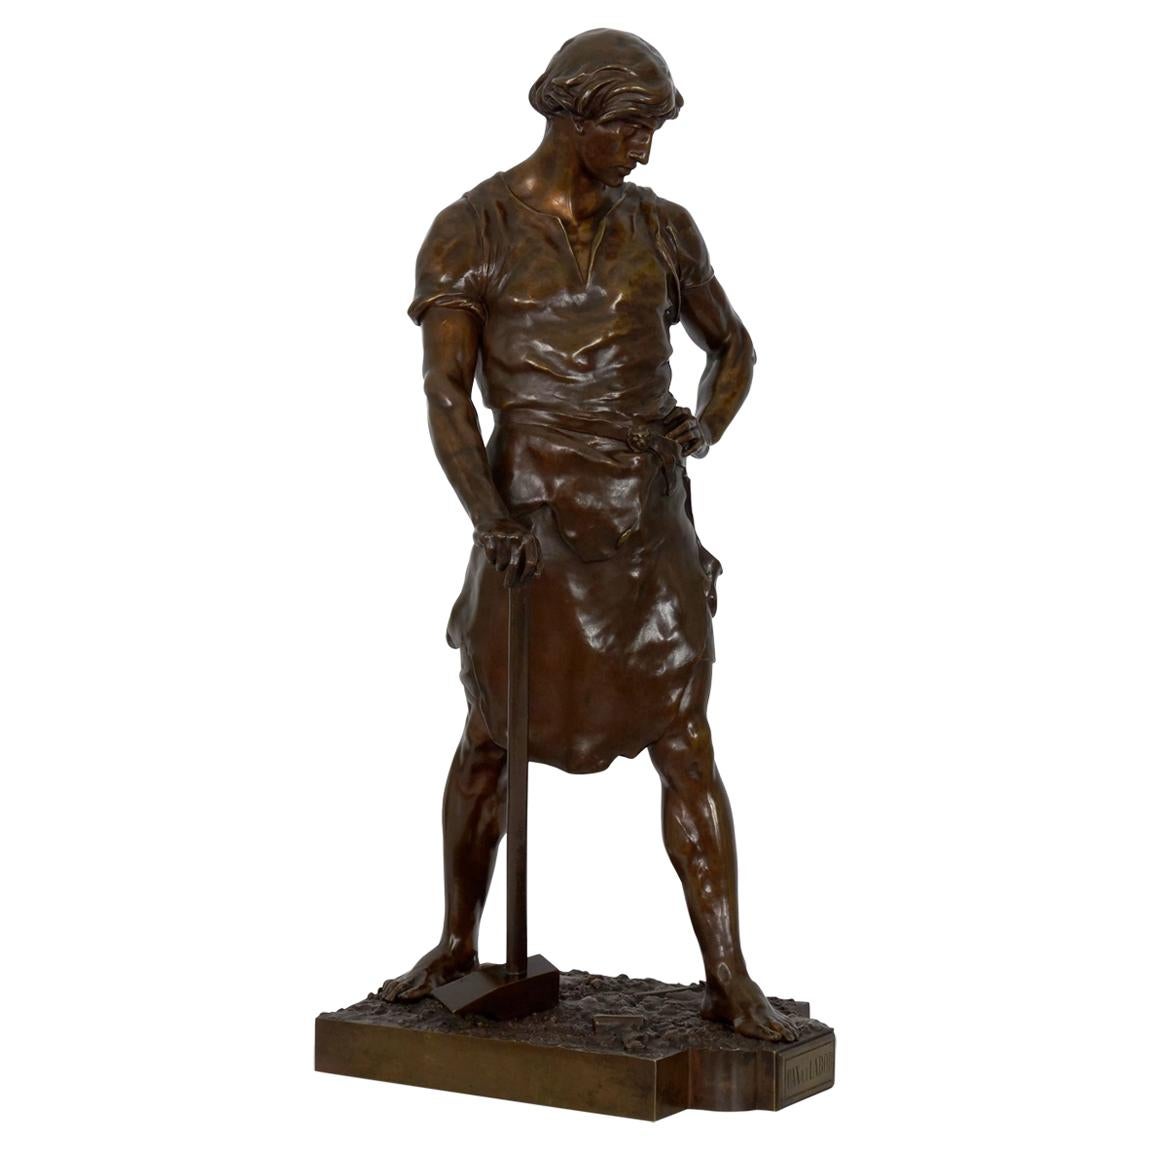 19th Century French Antique Bronze Sculpture “Pax et Labor” by Emile Picault